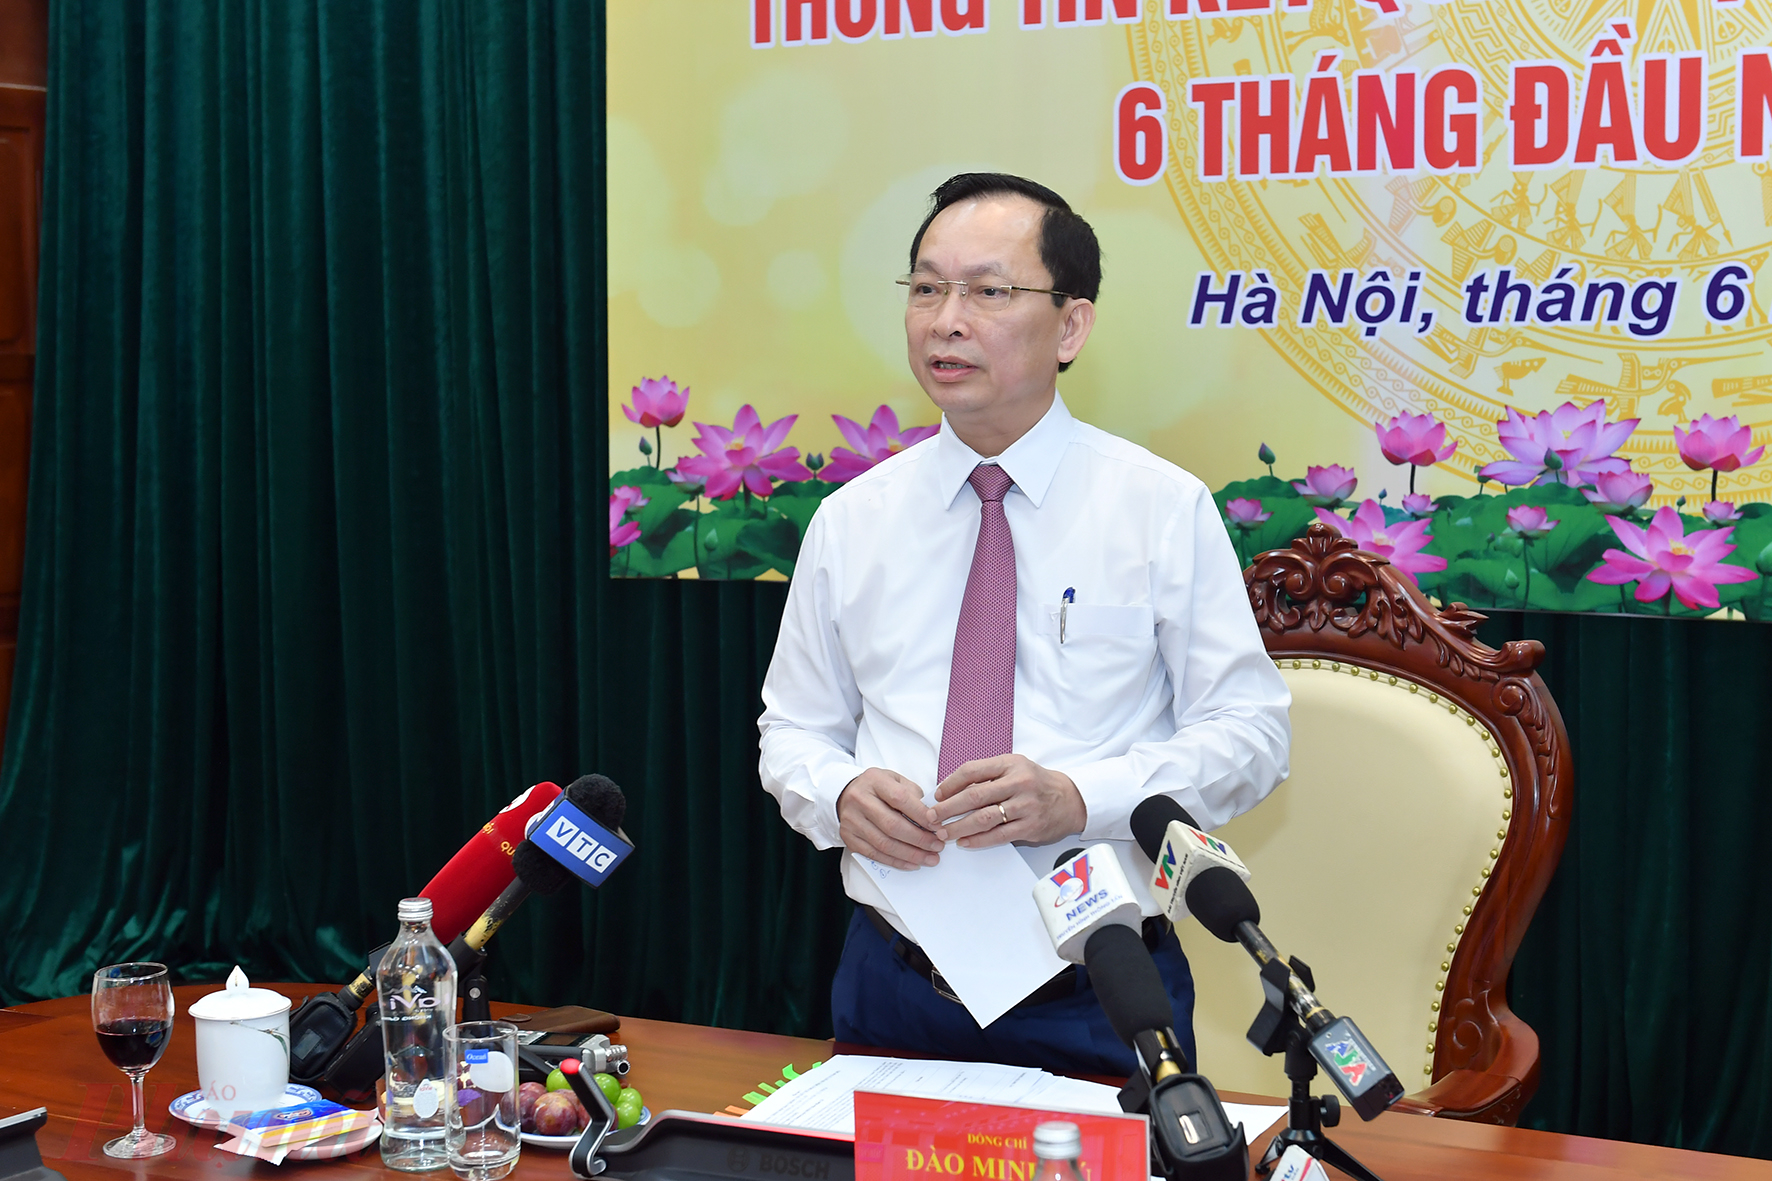 Phó Thống đốc Đào Minh Tú cho rằng với những người có nhu cầu mua nhà ở thật vẫn đảm bảo cho vay giống các lĩnh vực khác.